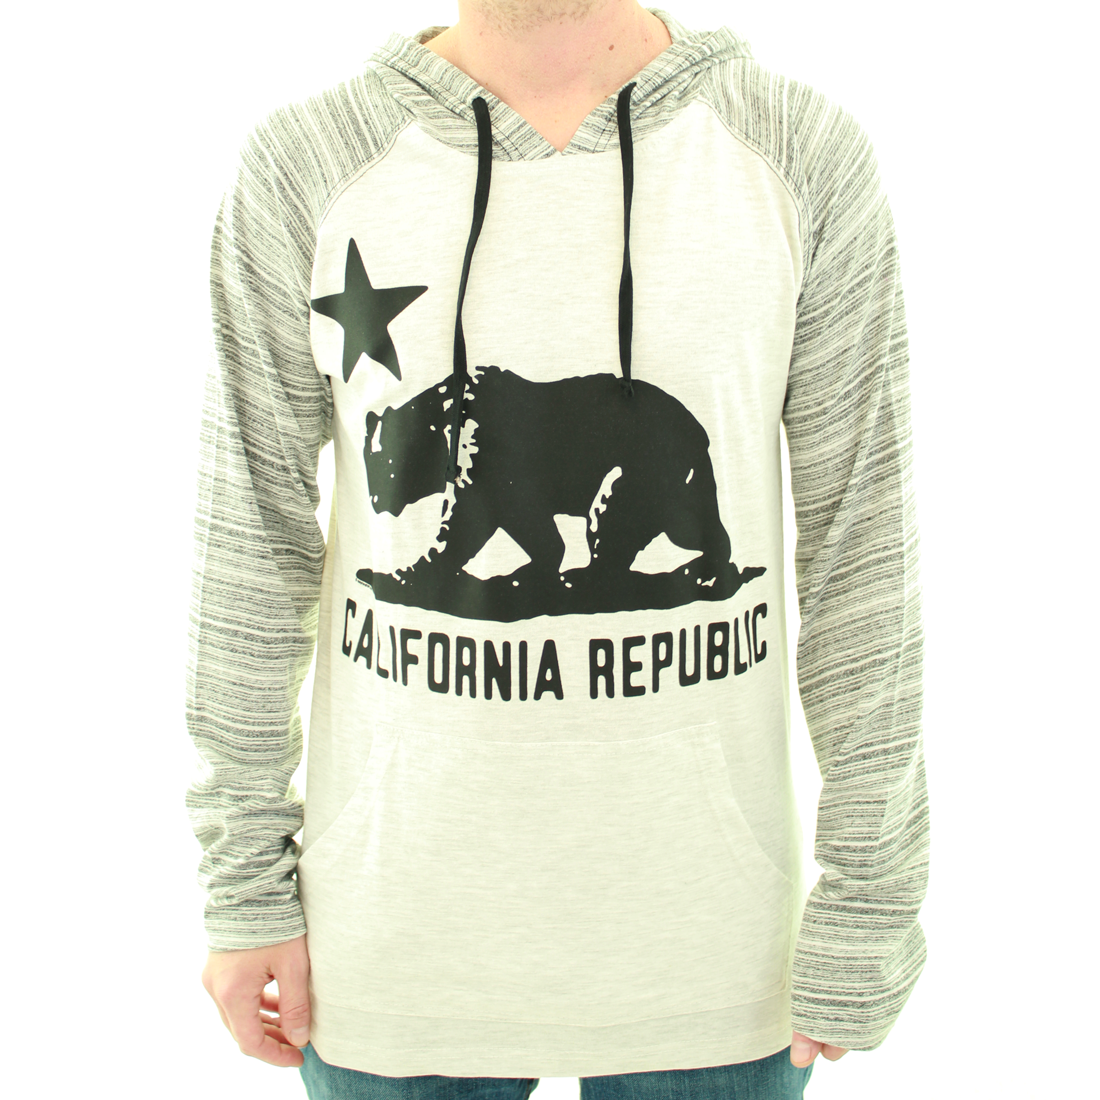 California Republic Burnside Oversized Silhouette Hooded Long Sleeve Shirt